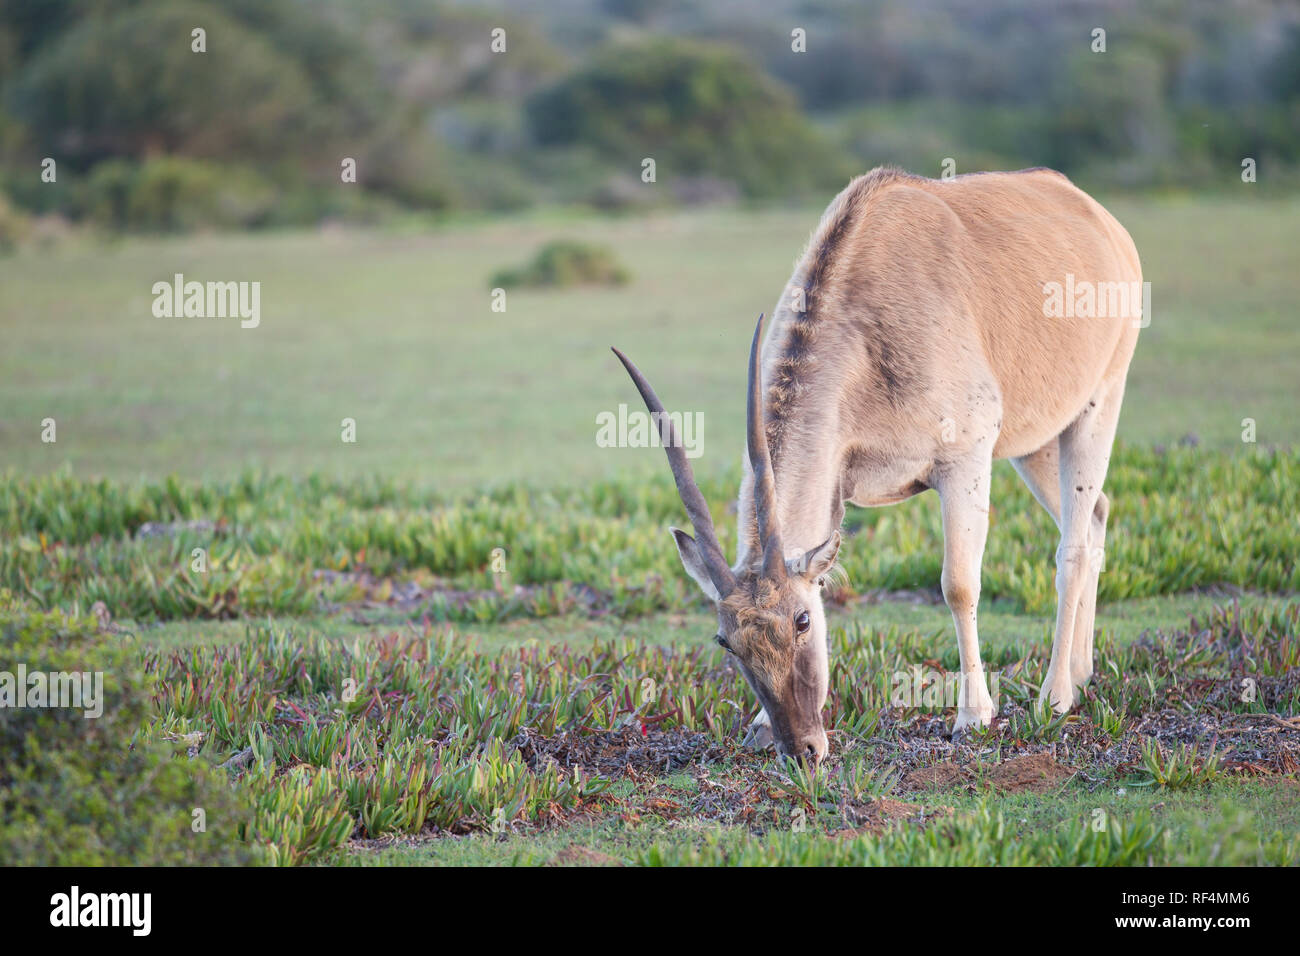 Gemeinsame eland, taurotragus Oryx, ist der zweitgrösste Antilope in der Welt hinter dem riesigen ELAND. Stockfoto